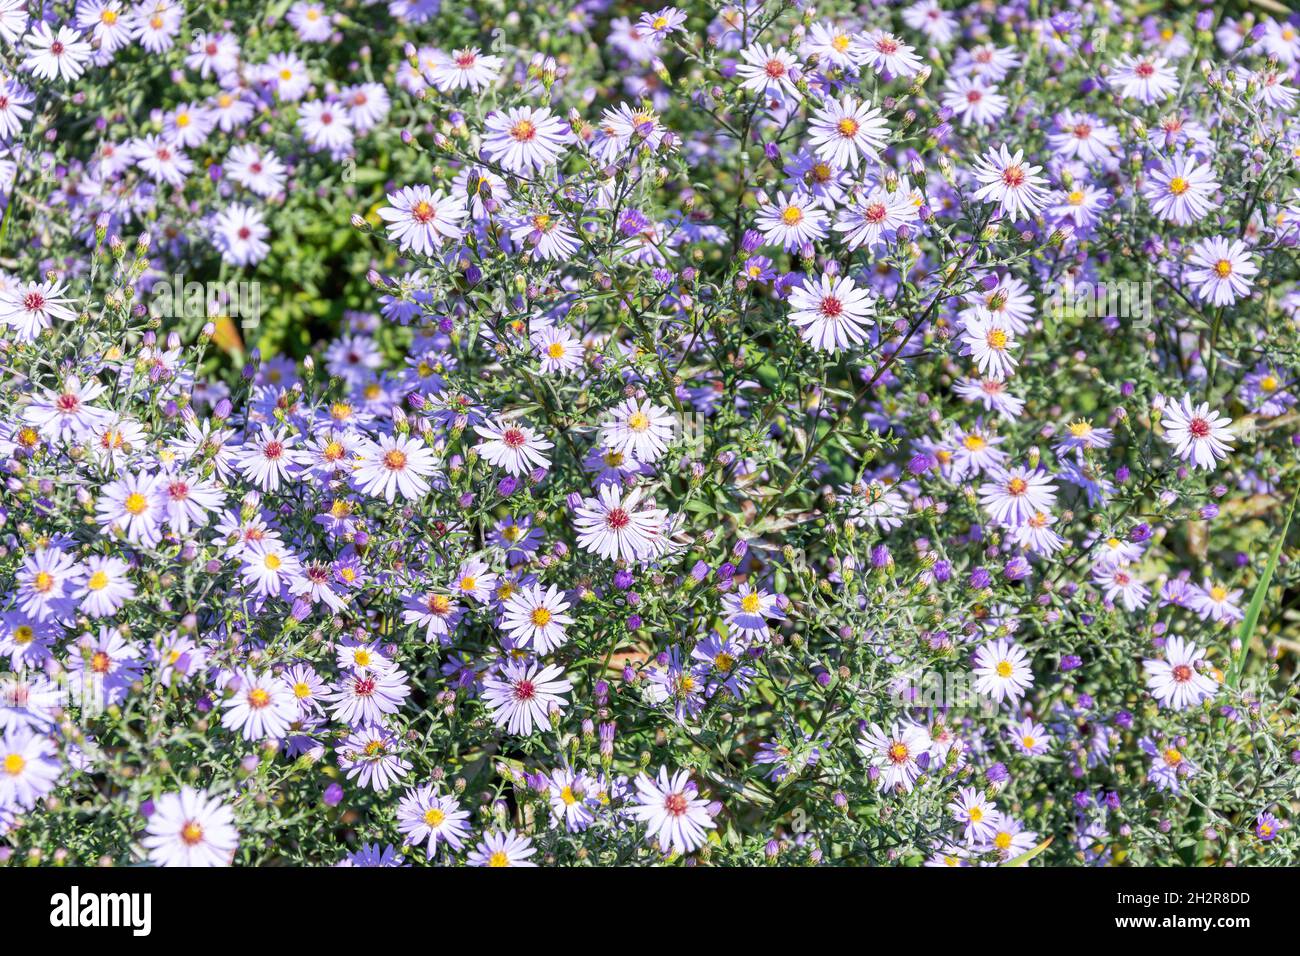 Aster amellus violet fleurs, Pembroke Lodge Gardens, Richmond Park, London Borough of Richmond upon Thames, Greater London, Angleterre, Royaume-Uni Banque D'Images